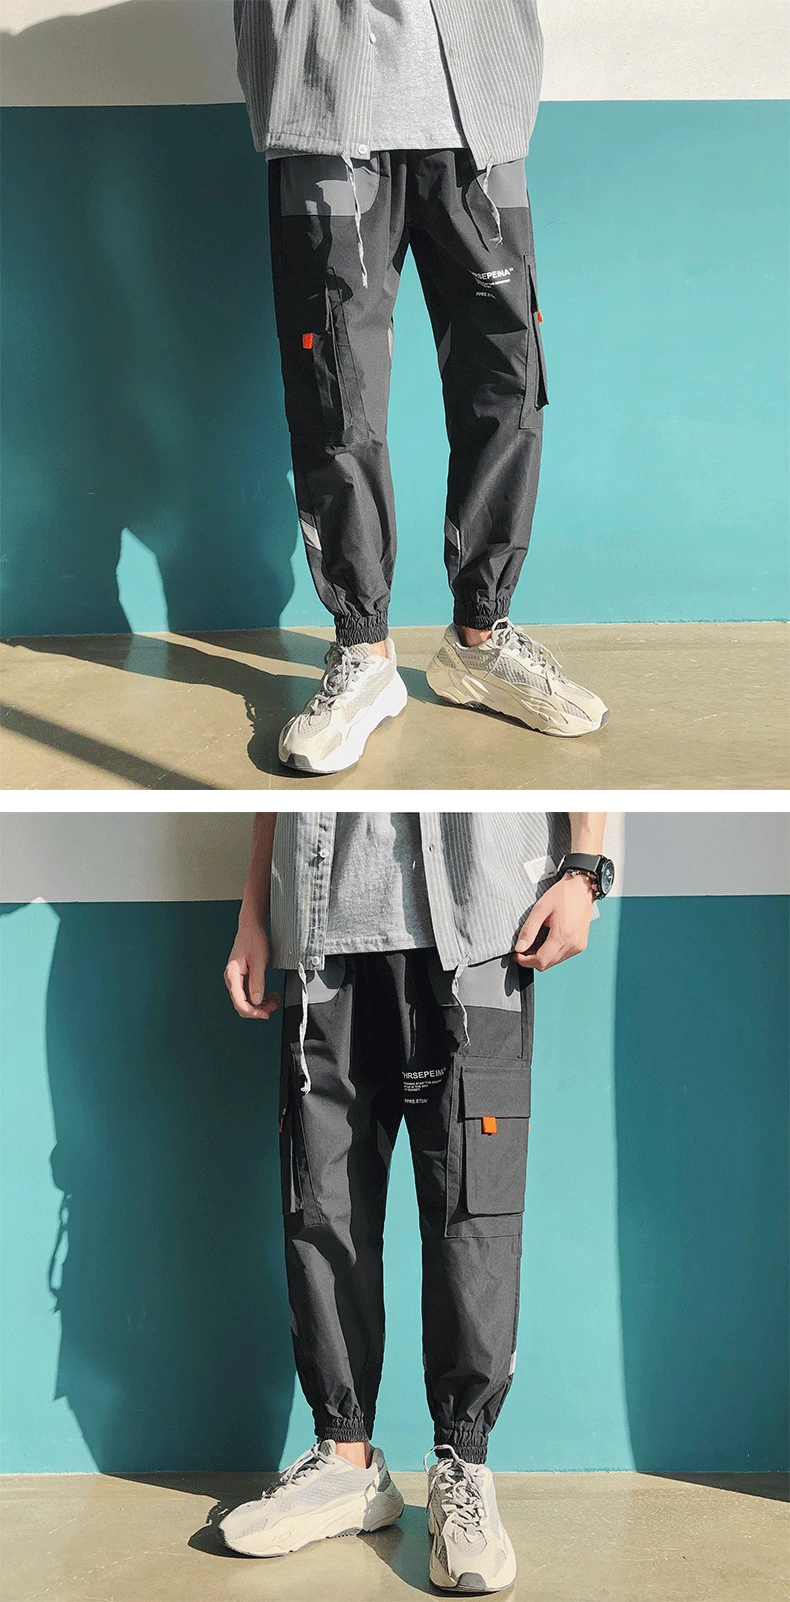 LAPPSTER цветные летние штаны для бега мужская Японская уличная одежда хип-хоп брюки карго черные спортивные брюки цвета хаки